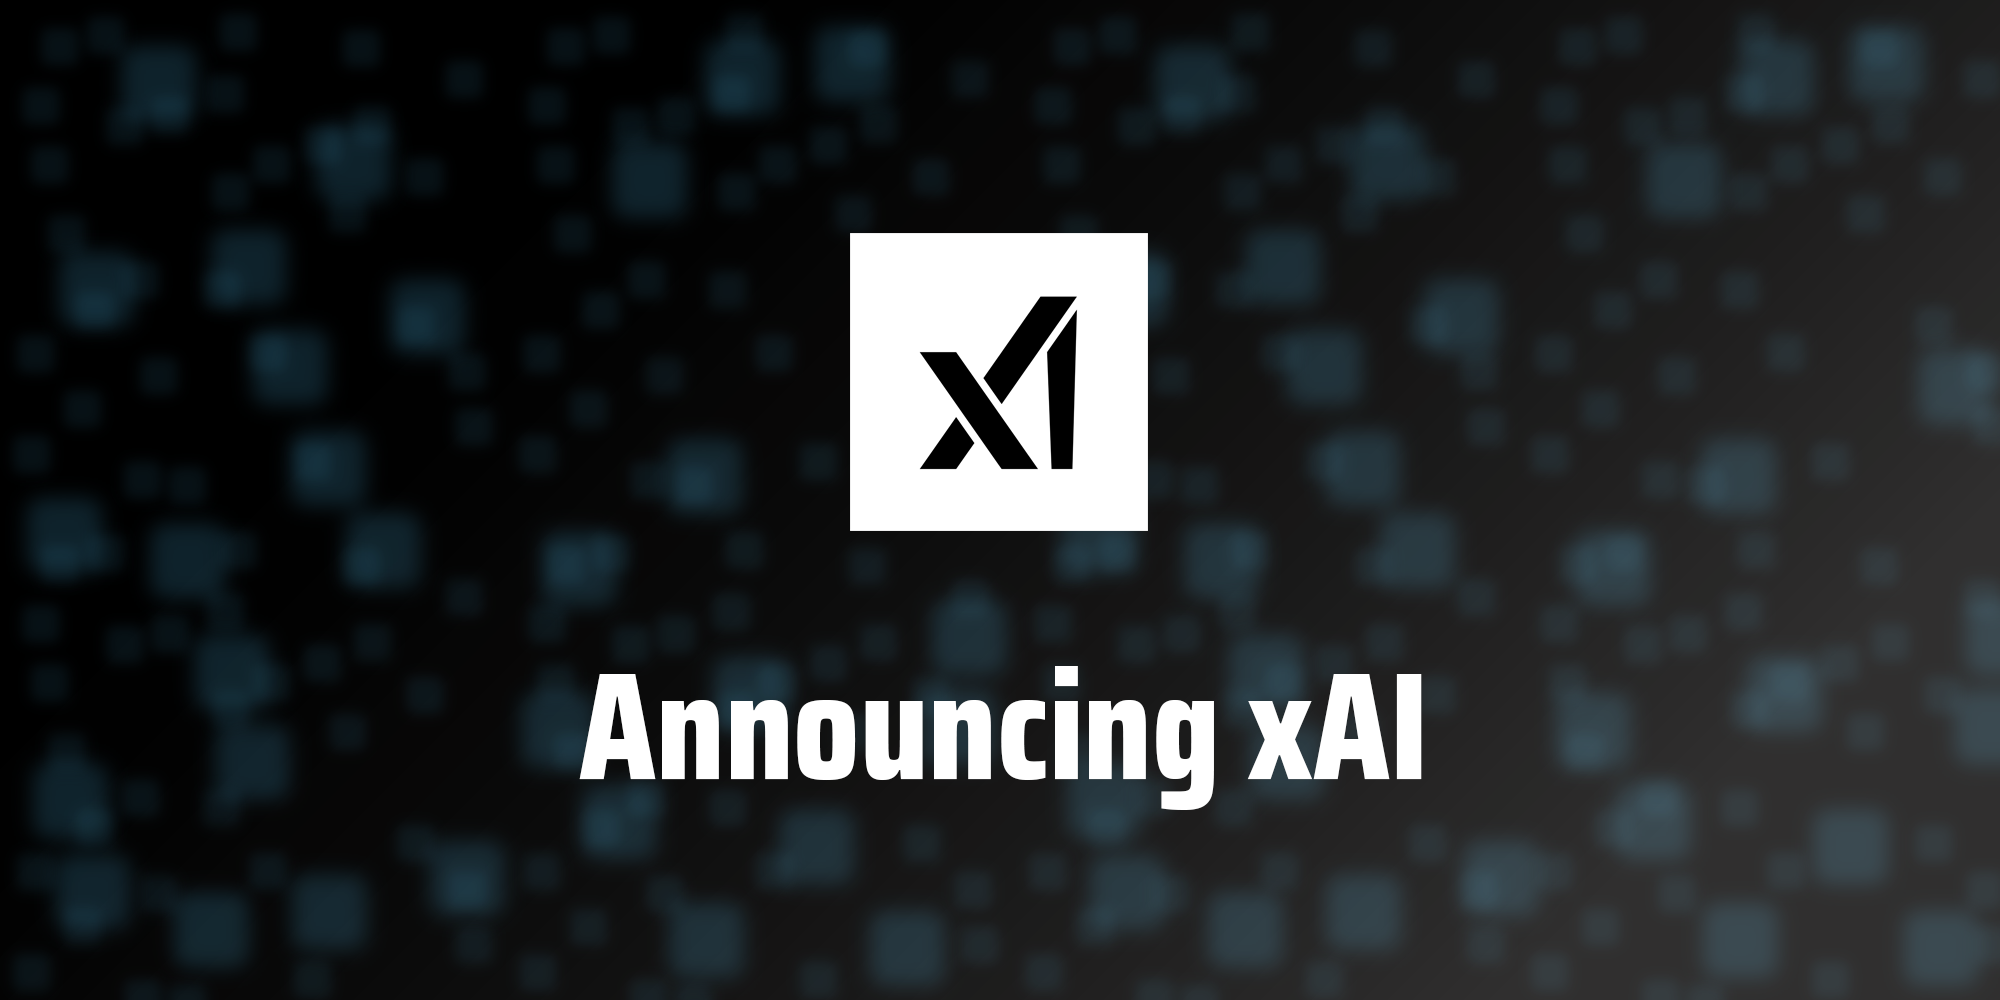 xAI rilascerà il primo modello di intelligenza artificiale per un "gruppo selezionato di utenti".